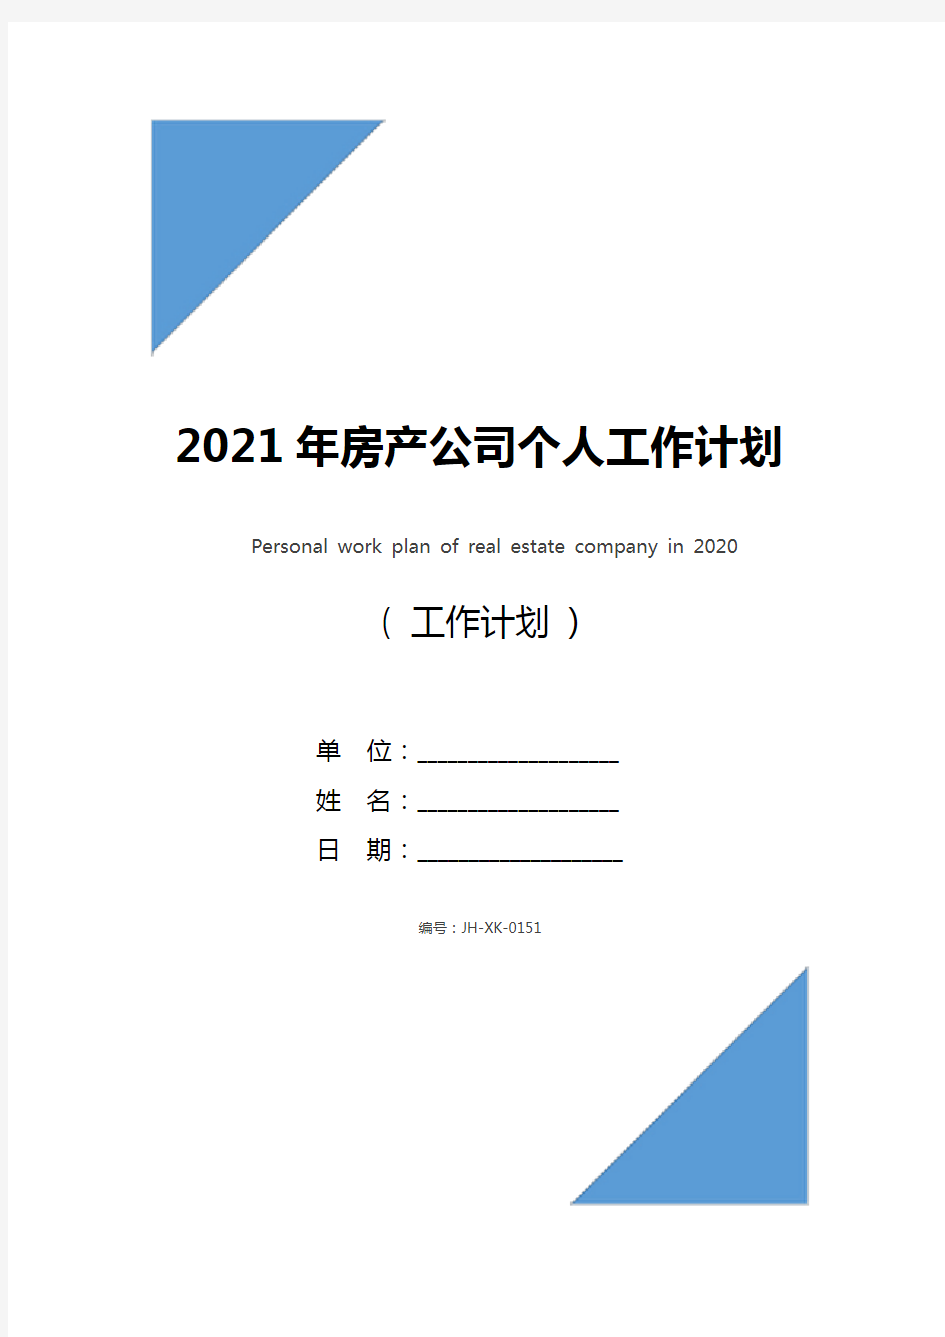 2021年房产公司个人工作计划(标准版)